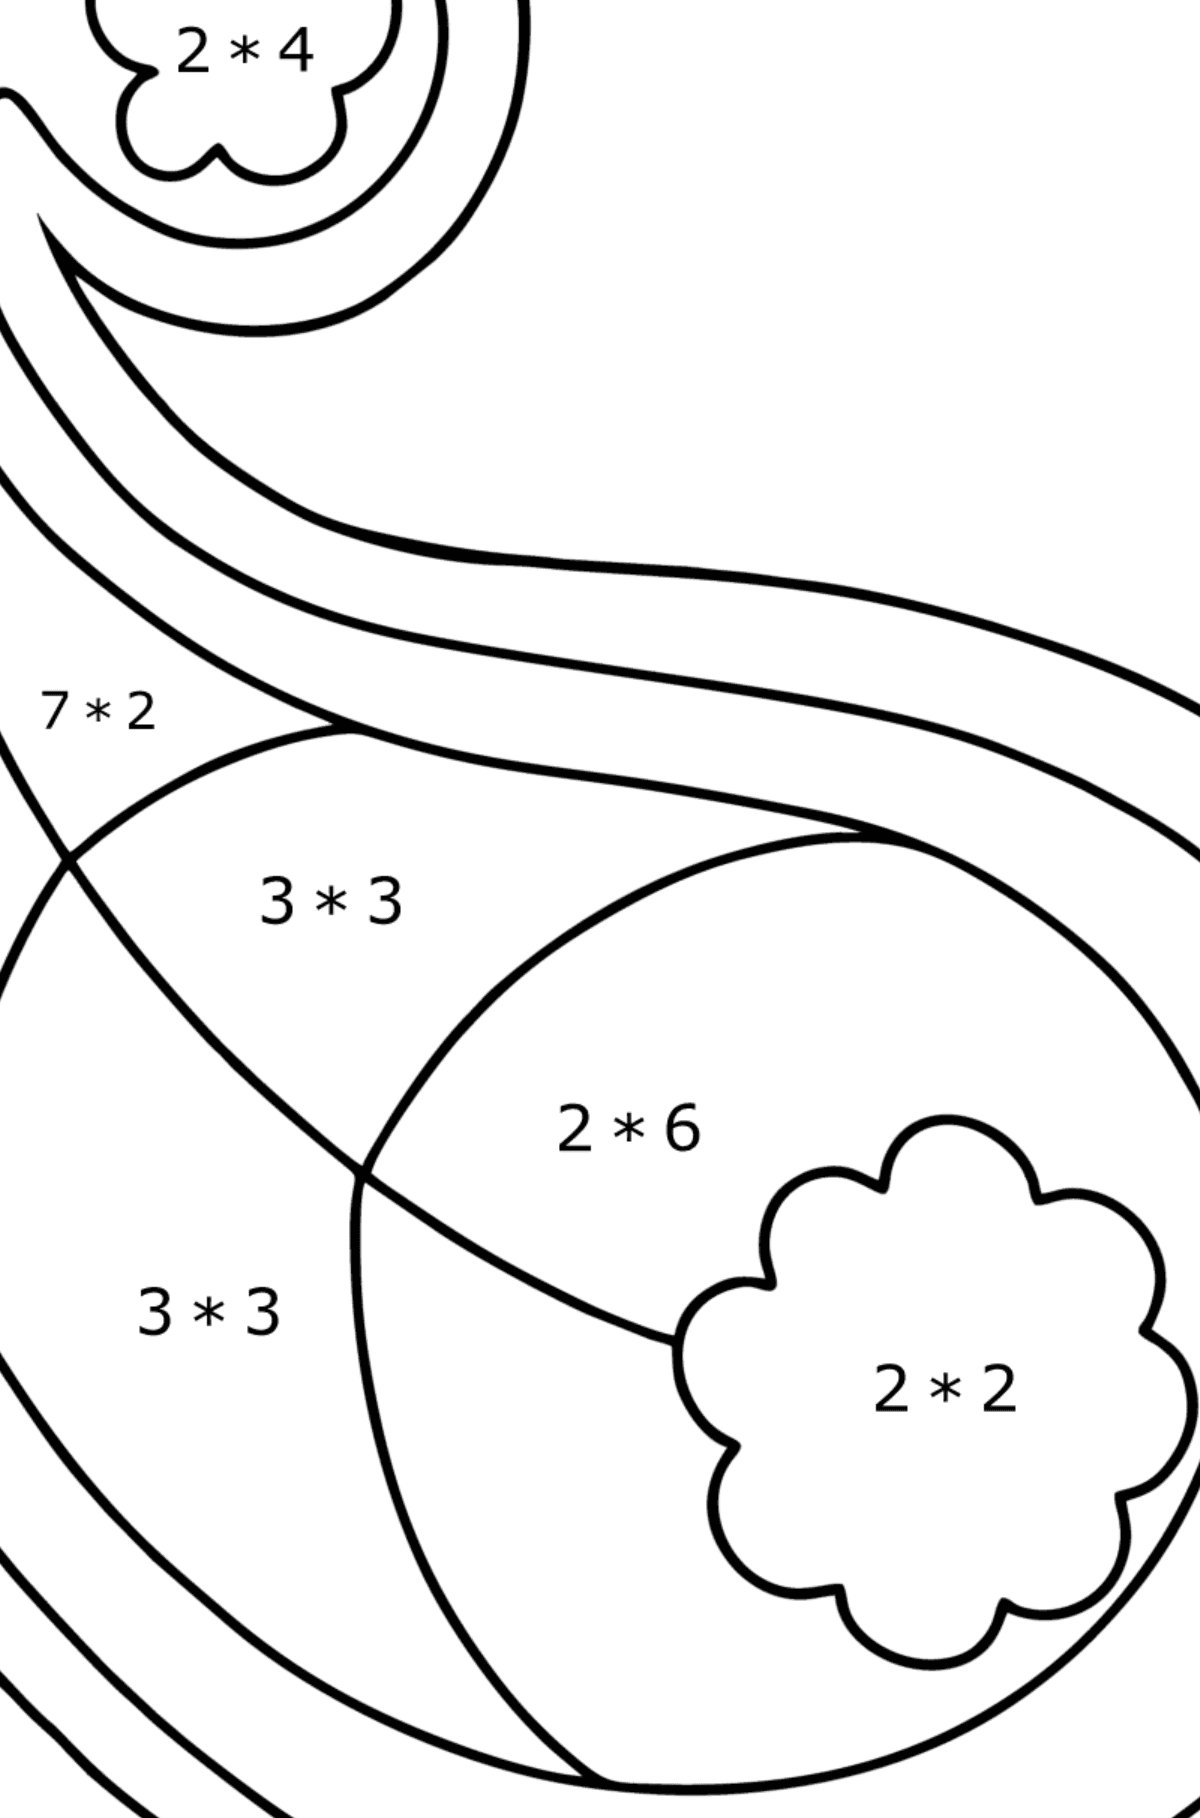 Mewarnai gambar paisley 2 - Pewarnaan Matematika: Penjumlahan untuk anak-anak